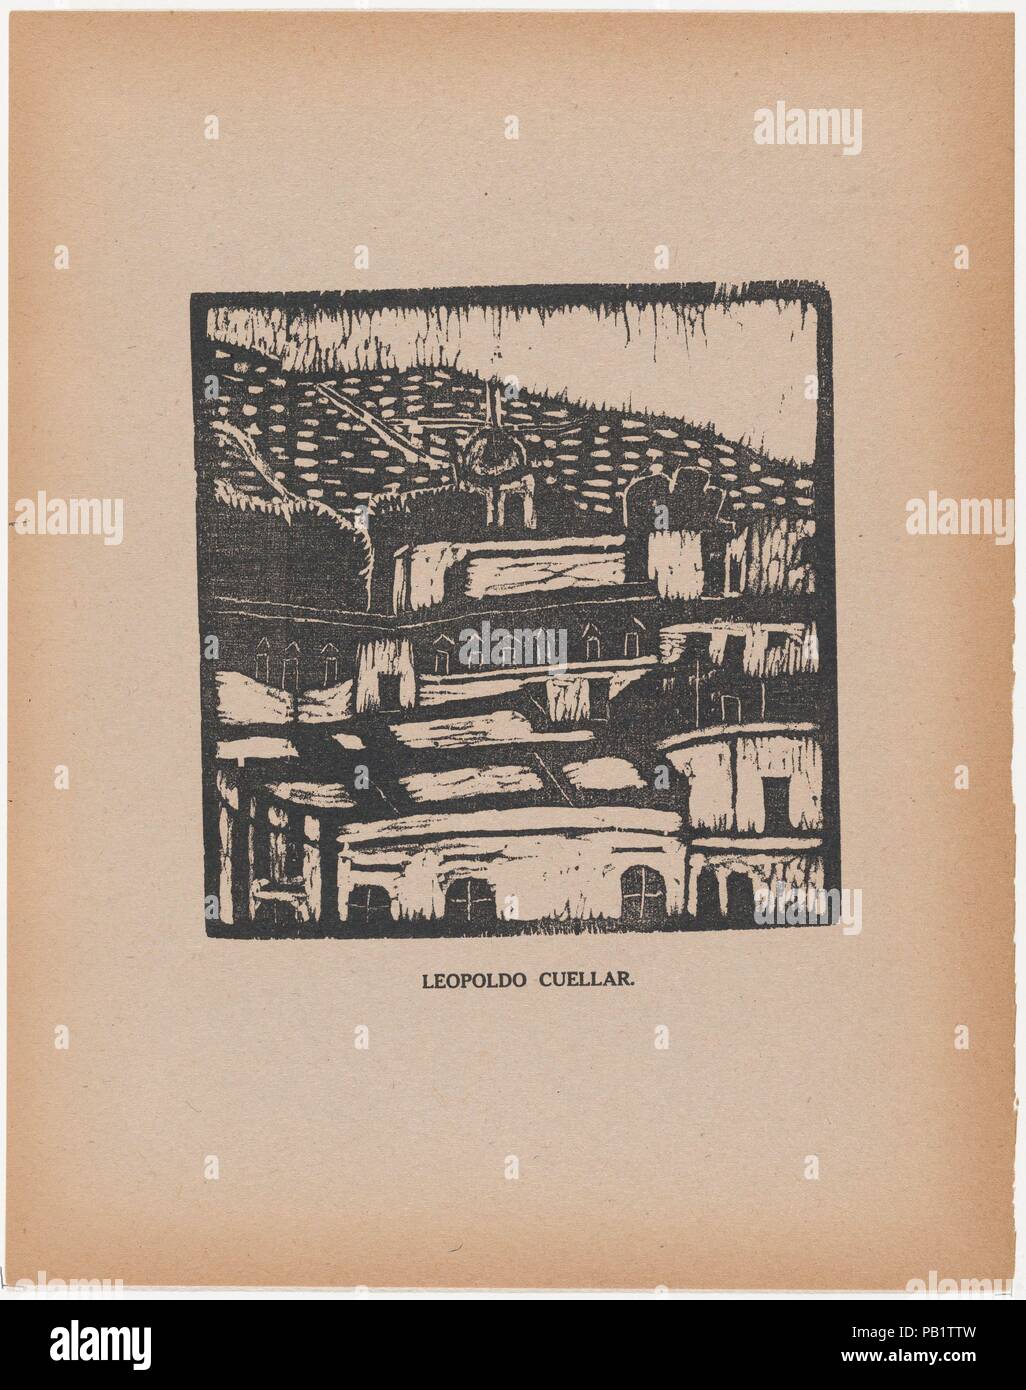 A townscape, from the portfolio 'Los pequeños grabadores en madera, alumnos de la Escuela Preparatoria de Jalisco' (Guadalajara, Mexico 1925). Artist: Leopoldo Cuellar (Mexican, active 1920s). Dimensions: Sheet: 11 5/8 × 9 1/8 in. (29.5 × 23.2 cm)  Image: 5 7/8 × 5 3/4 in. (15 × 14.6 cm). Date: ca. 1924.  See comment for 29.101.19. Museum: Metropolitan Museum of Art, New York, USA. Stock Photo